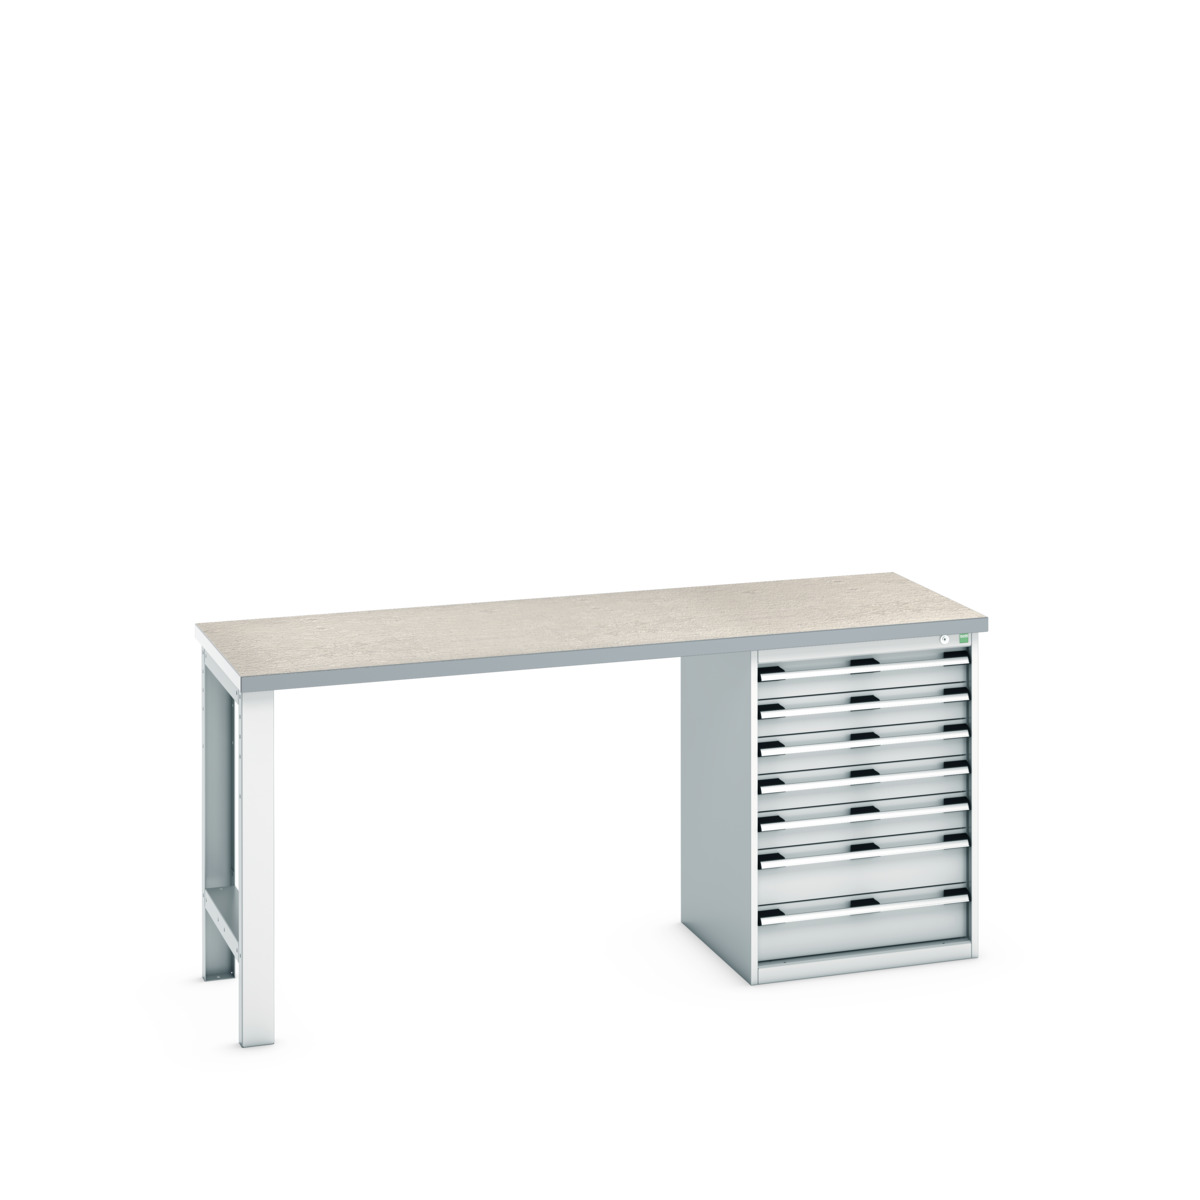 41004122.16V - cubio pedestal bench (lino)